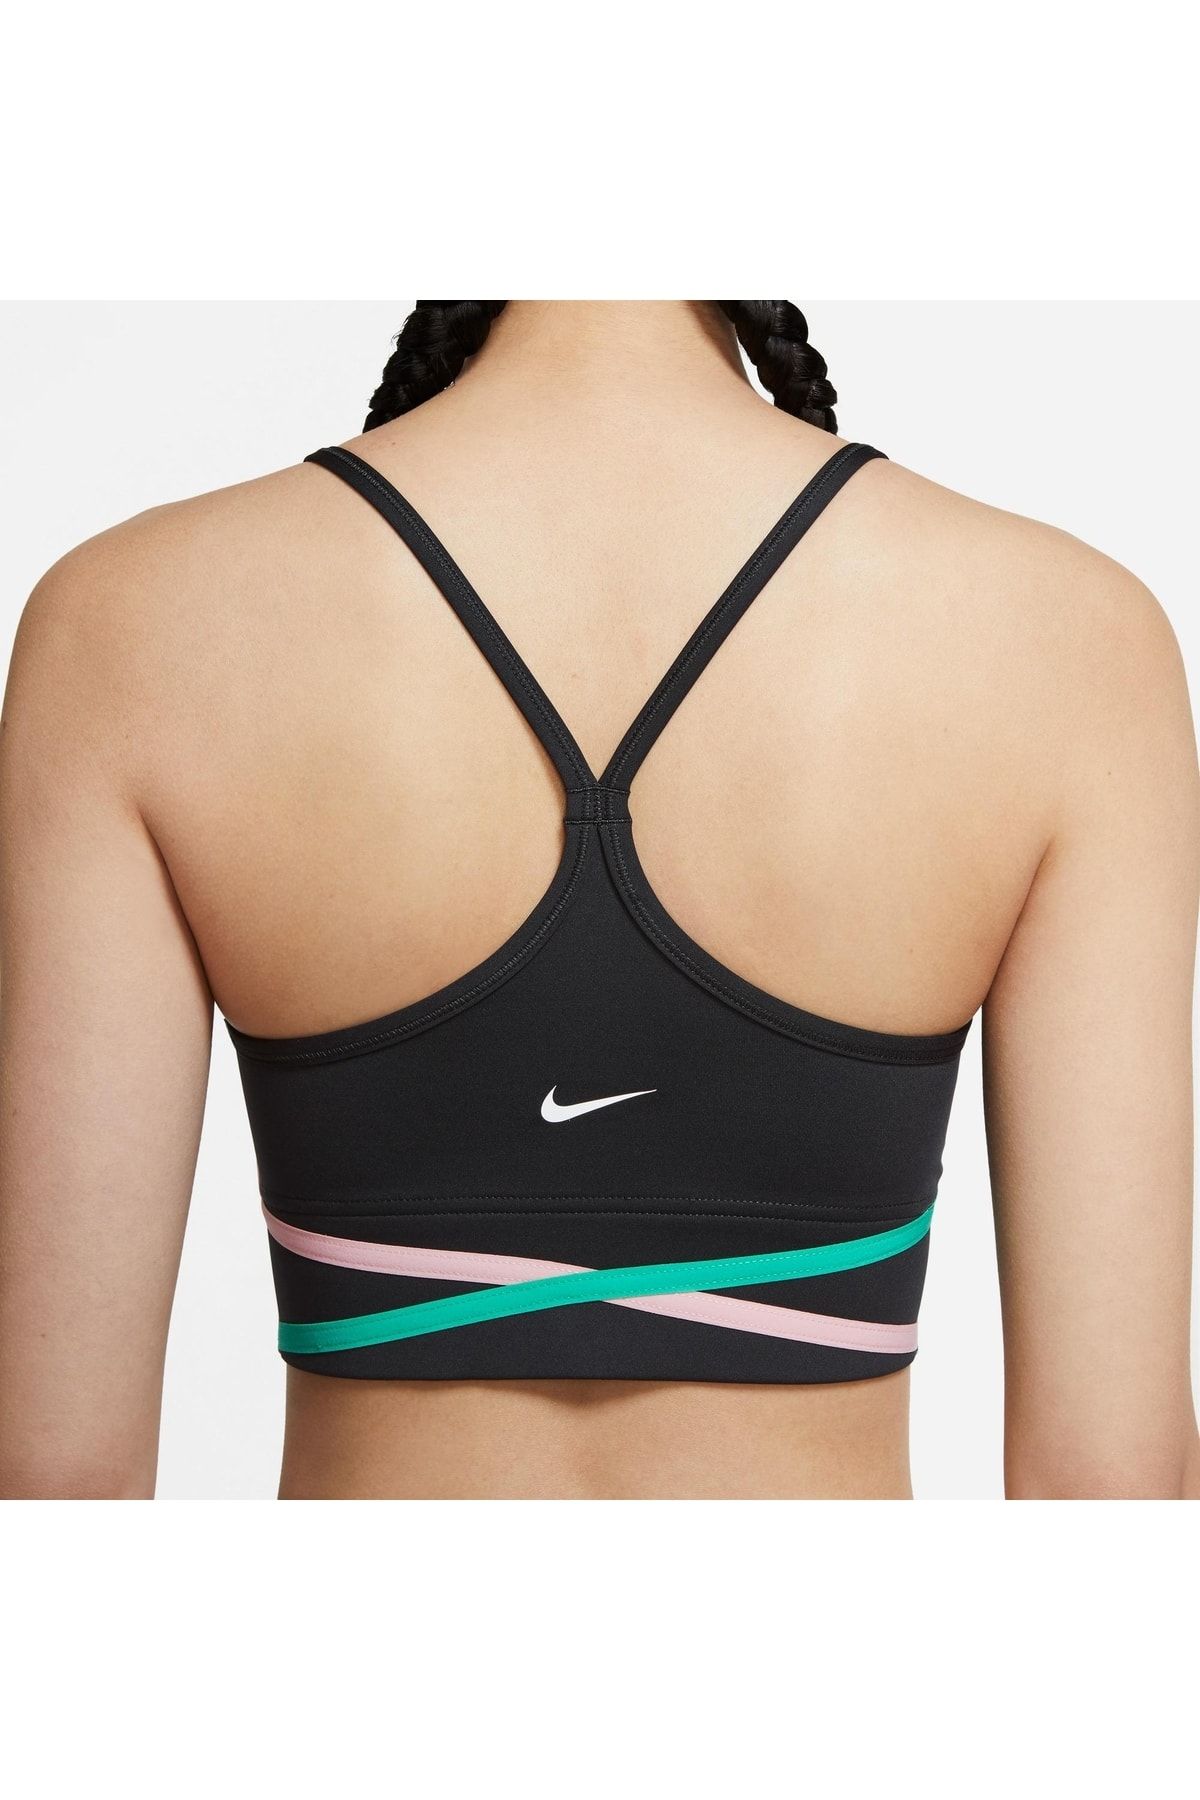 Buy Nike Women's Indy UltraBreathe Light-Support Sports Bra Black in KSA  -SSS